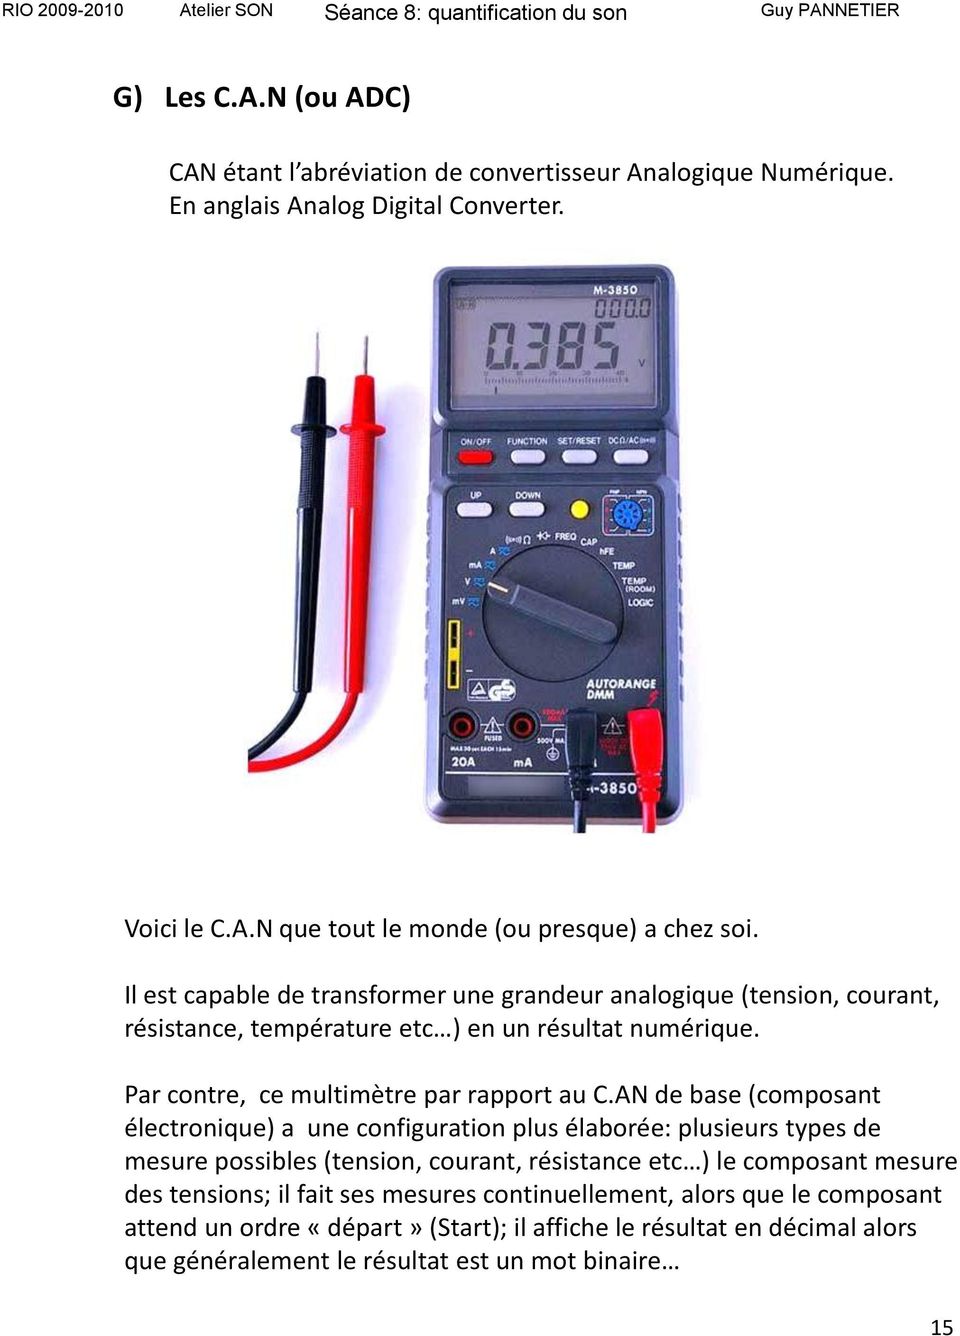 AN de base (composant électronique) a une configuration plus élaborée: plusieurs types de mesure possibles (tension, courant, résistance etc ) le composant mesure des